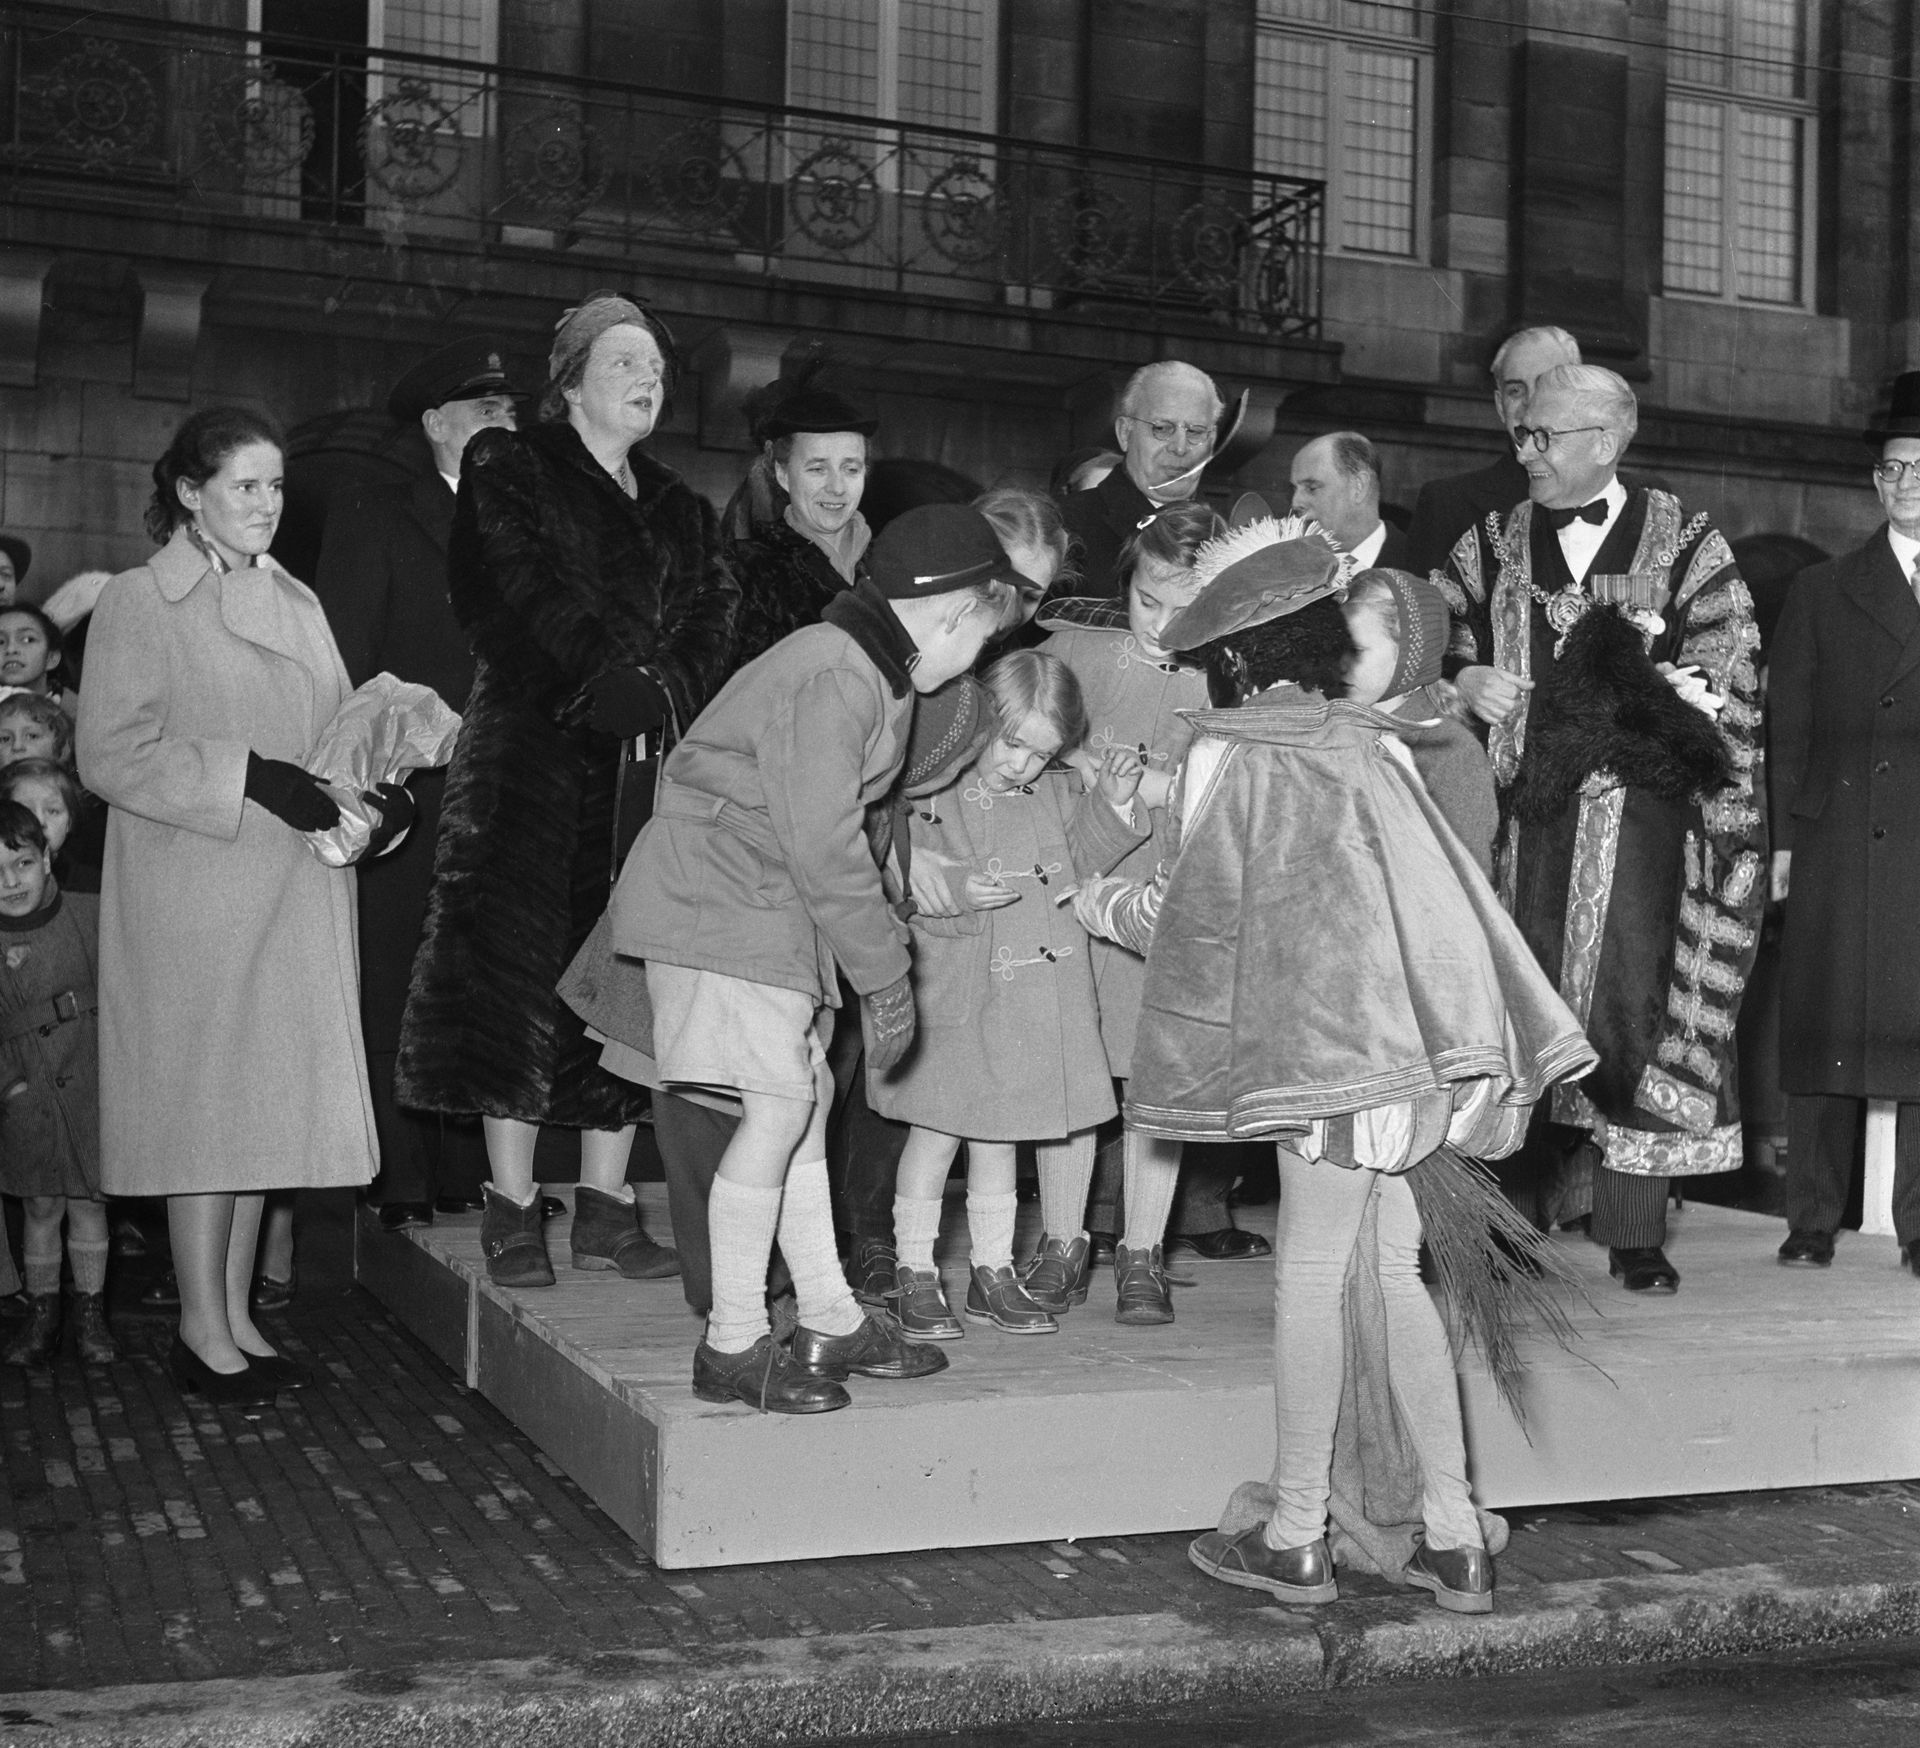 De prinsessen Christina en Margriet krijgen pepernoten uit de hand van een klein Pietje. - Paleis op de Dam 1952.